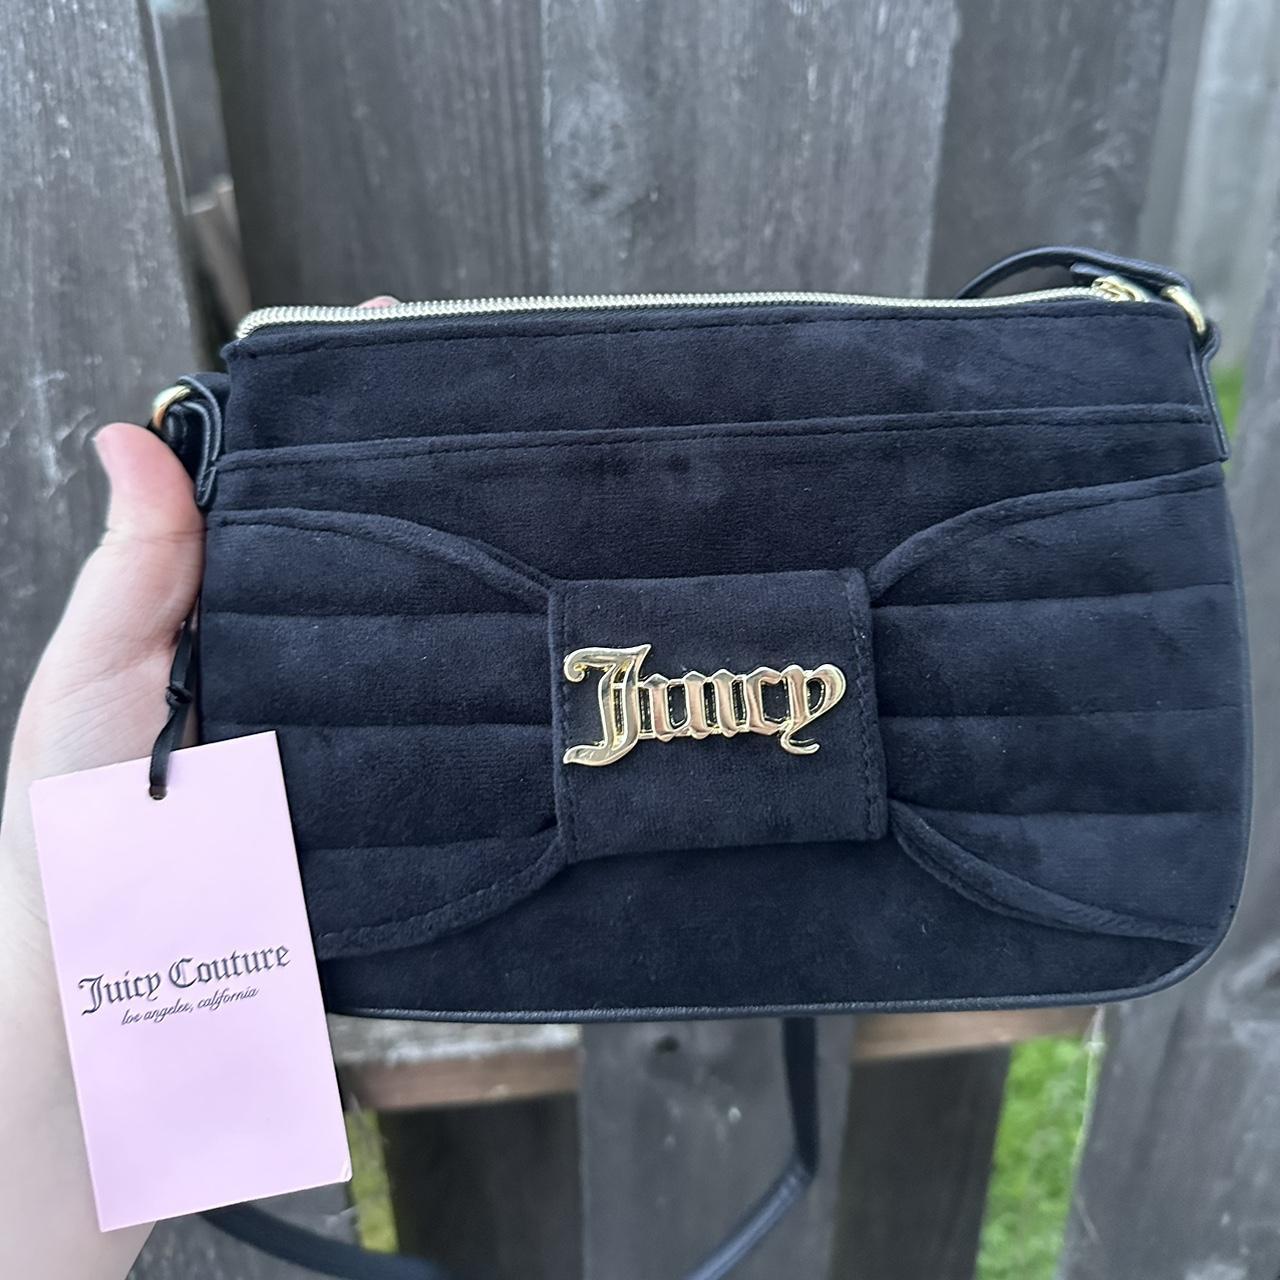 Help with Juicy Couture bag / vintage? : r/Depop